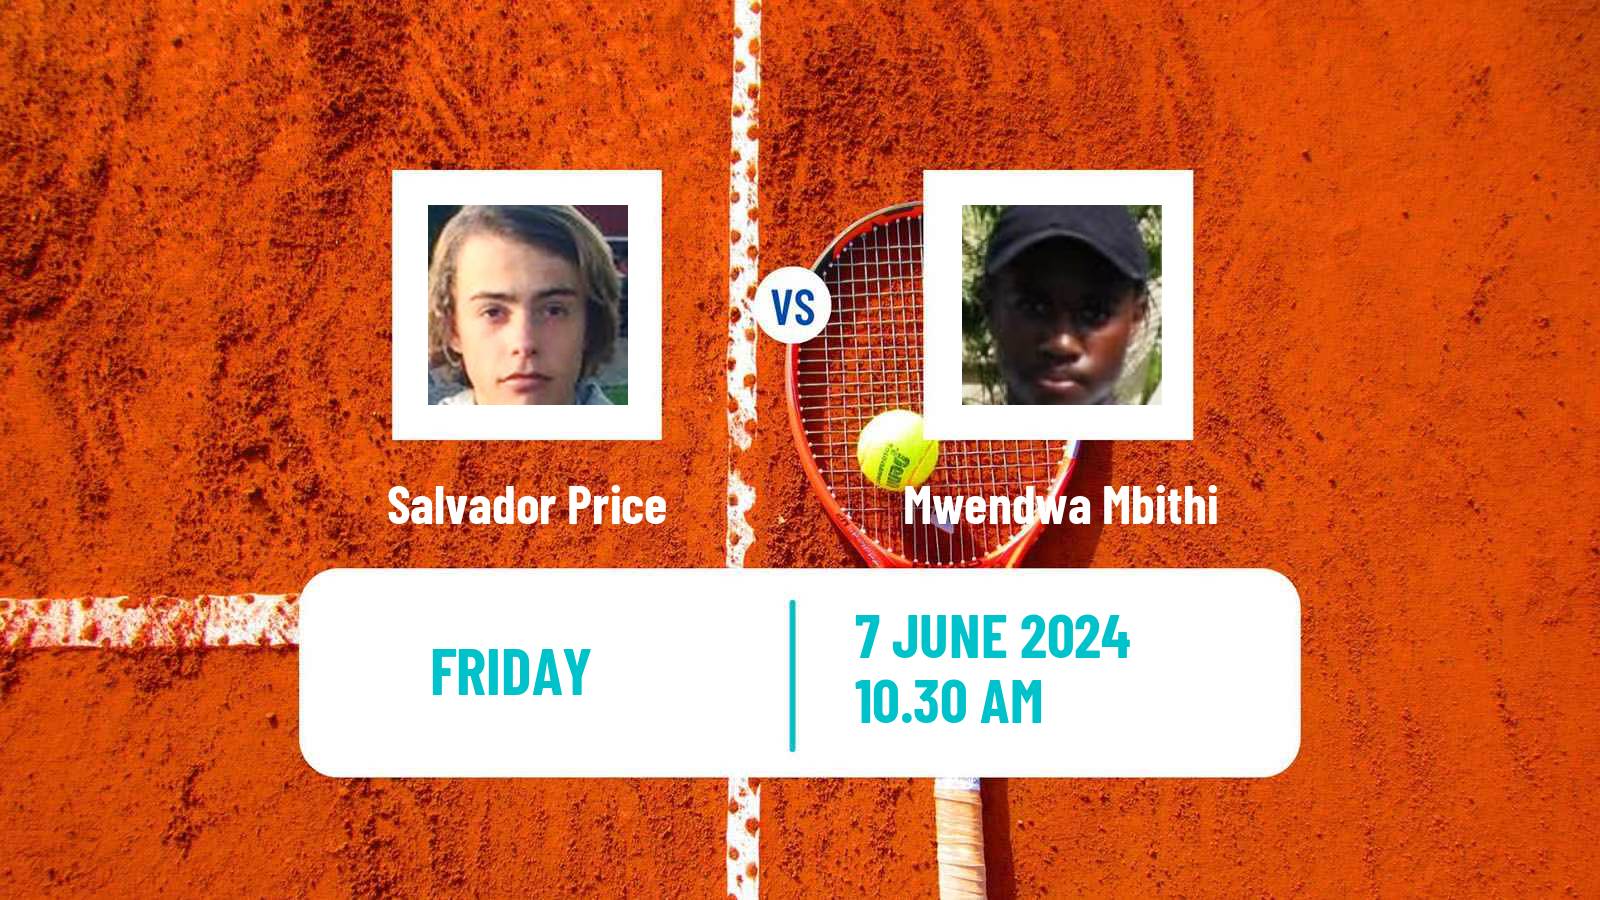 Tennis ITF M15 Santo Domingo Men Salvador Price - Mwendwa Mbithi